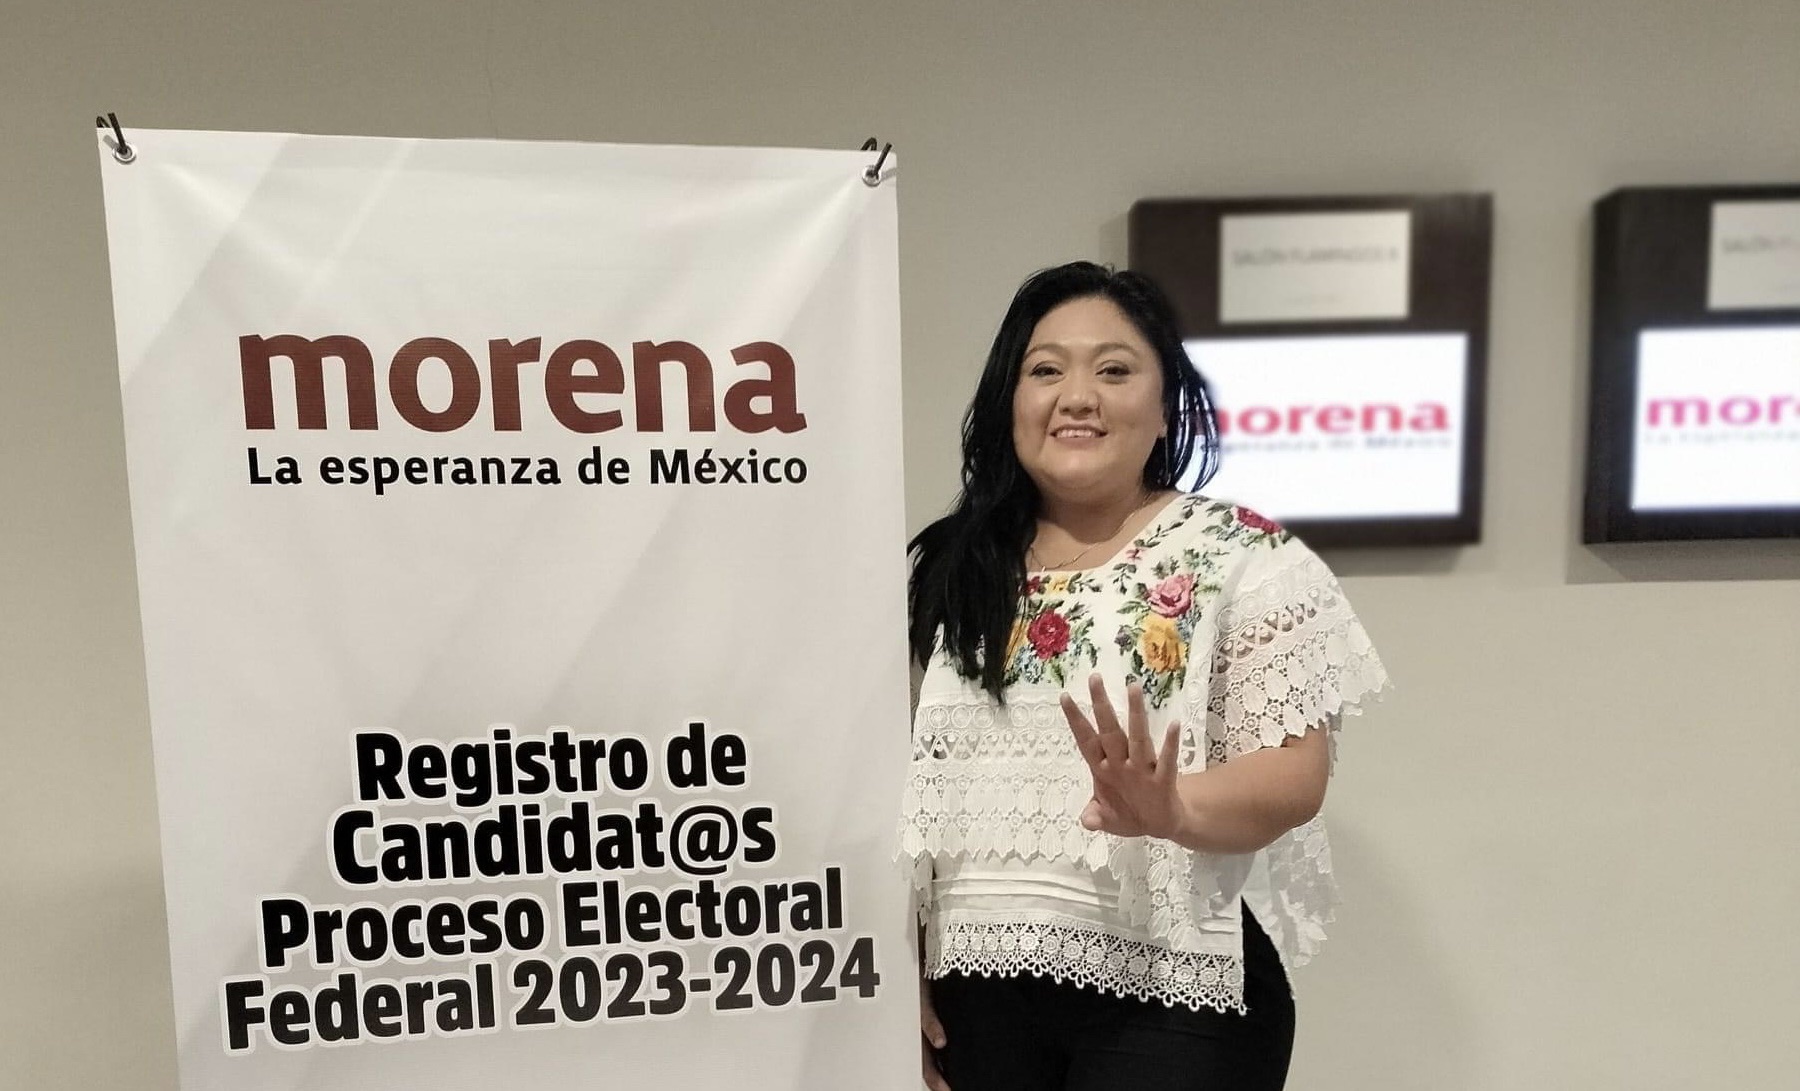 Rocío Barrera Puc de Morena no logra candidatura por falta de acreditación indígena